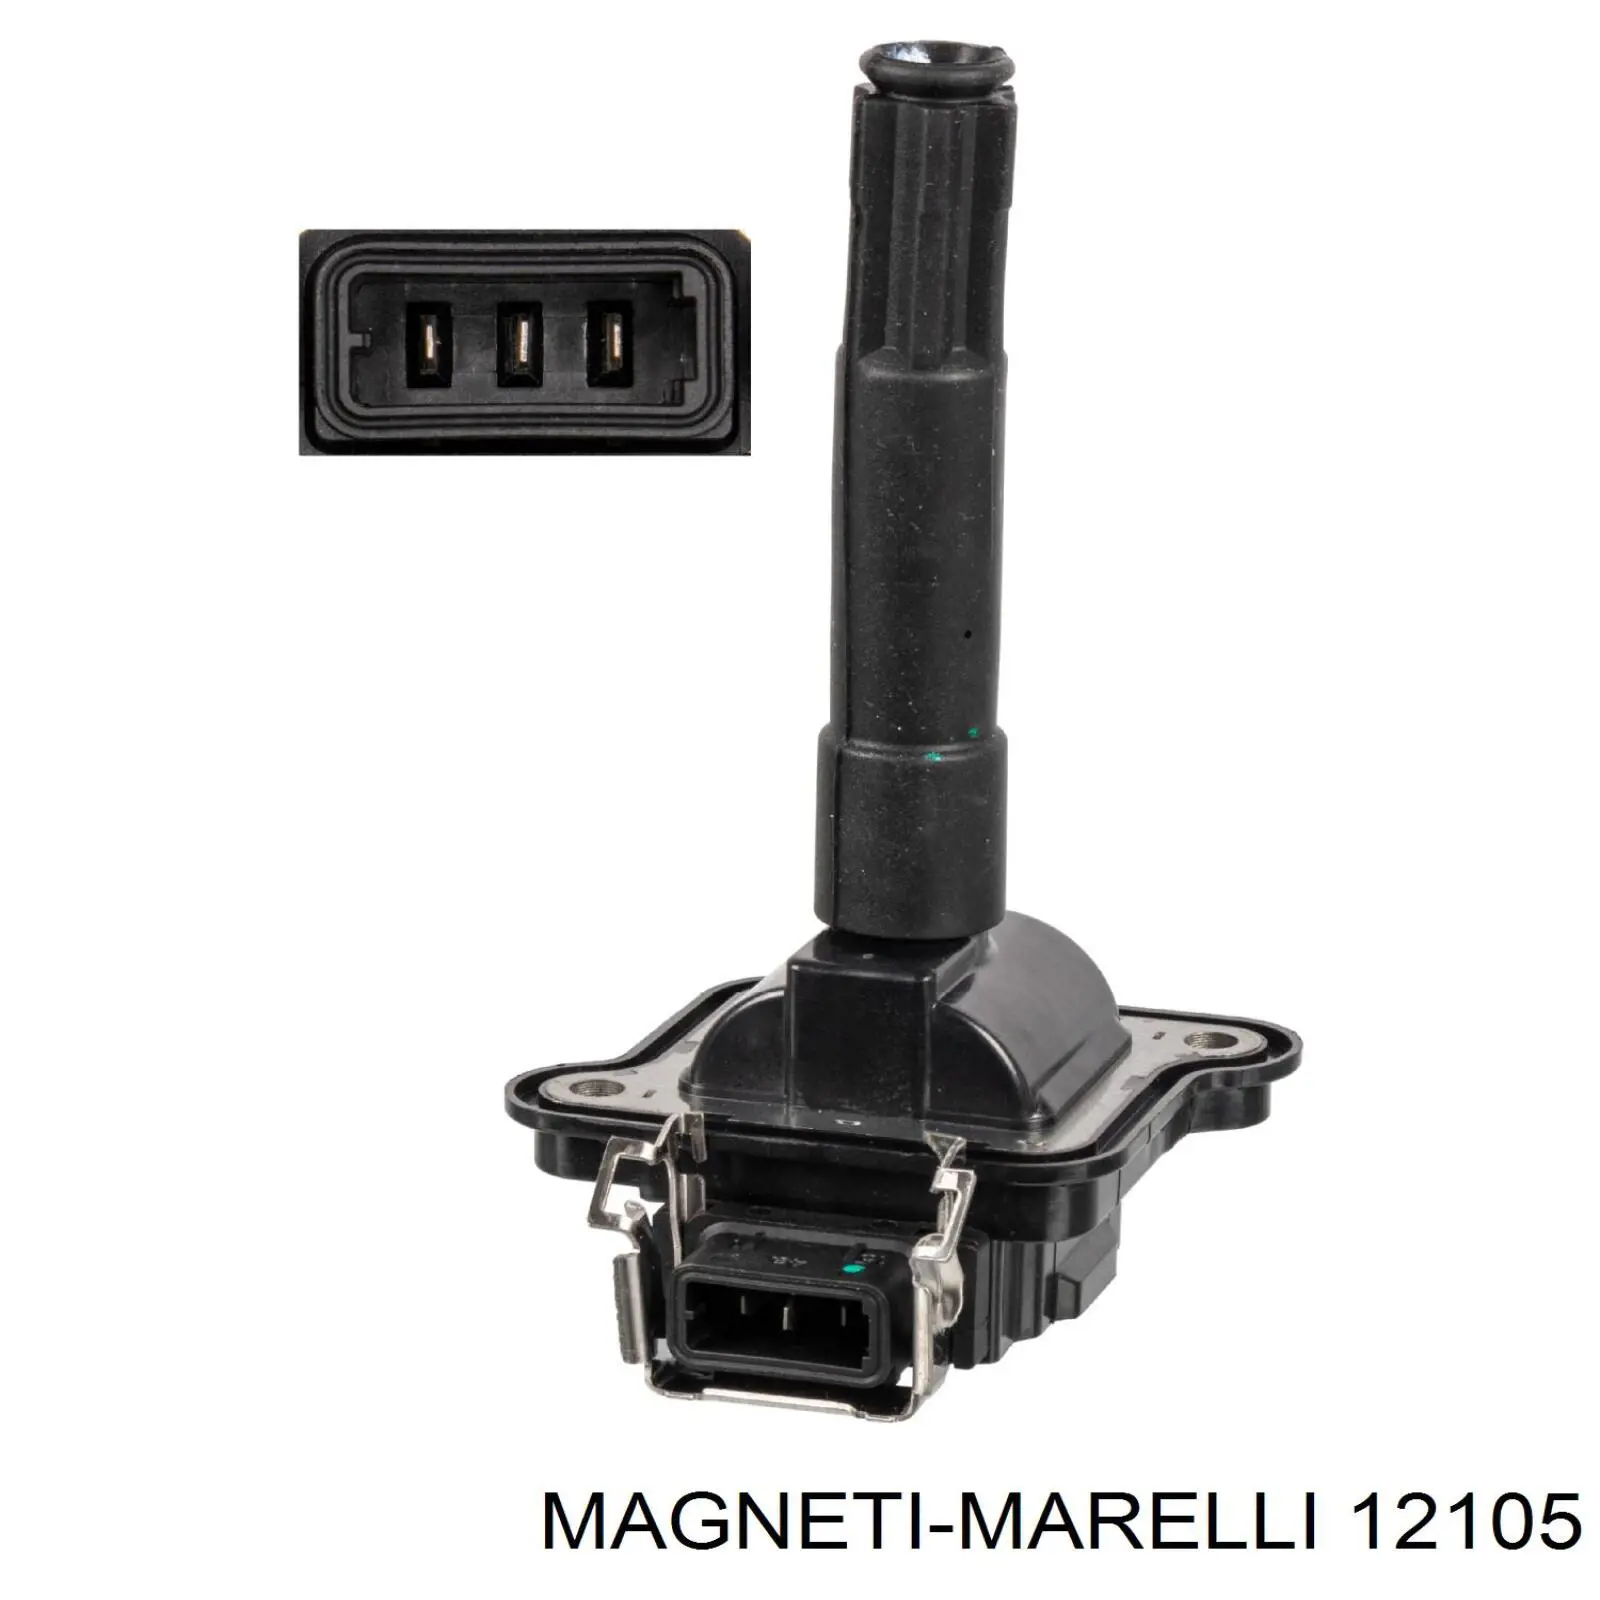 12105 Magneti Marelli piloto intermitente derecho